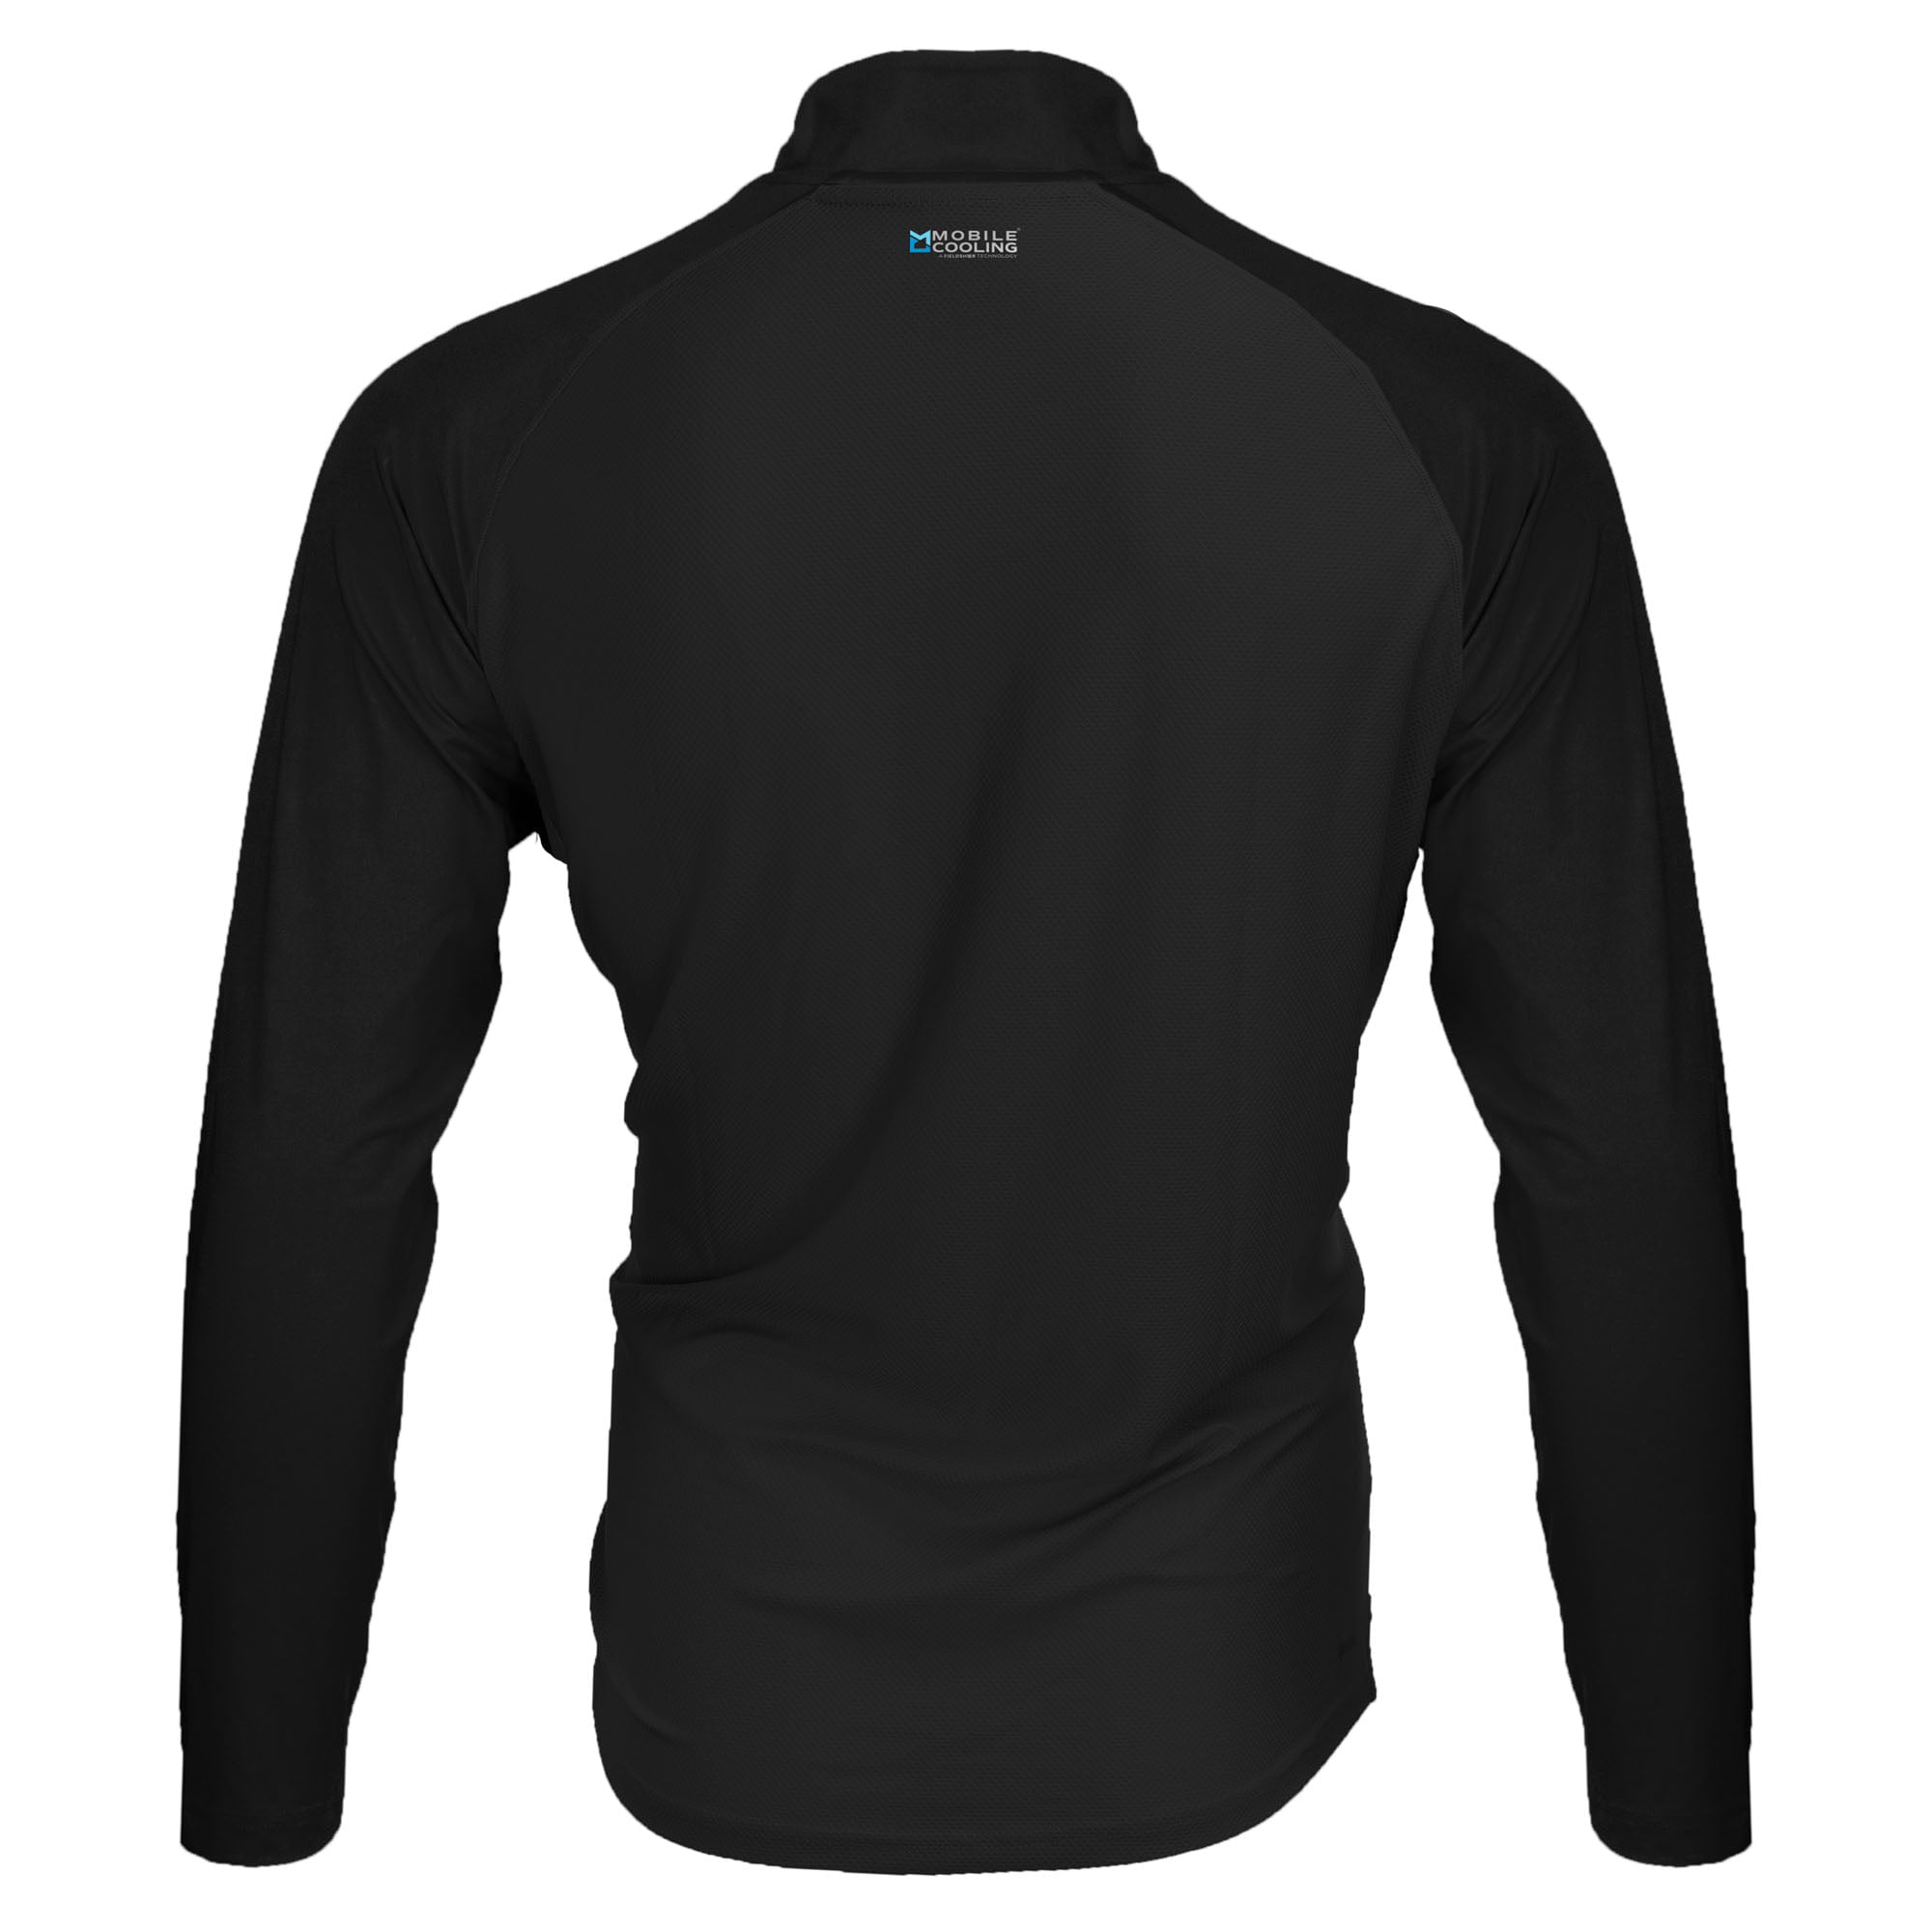 Fieldsheer Mobile Cooling Men's 1/4 Zip Long Sleeve Shirt L